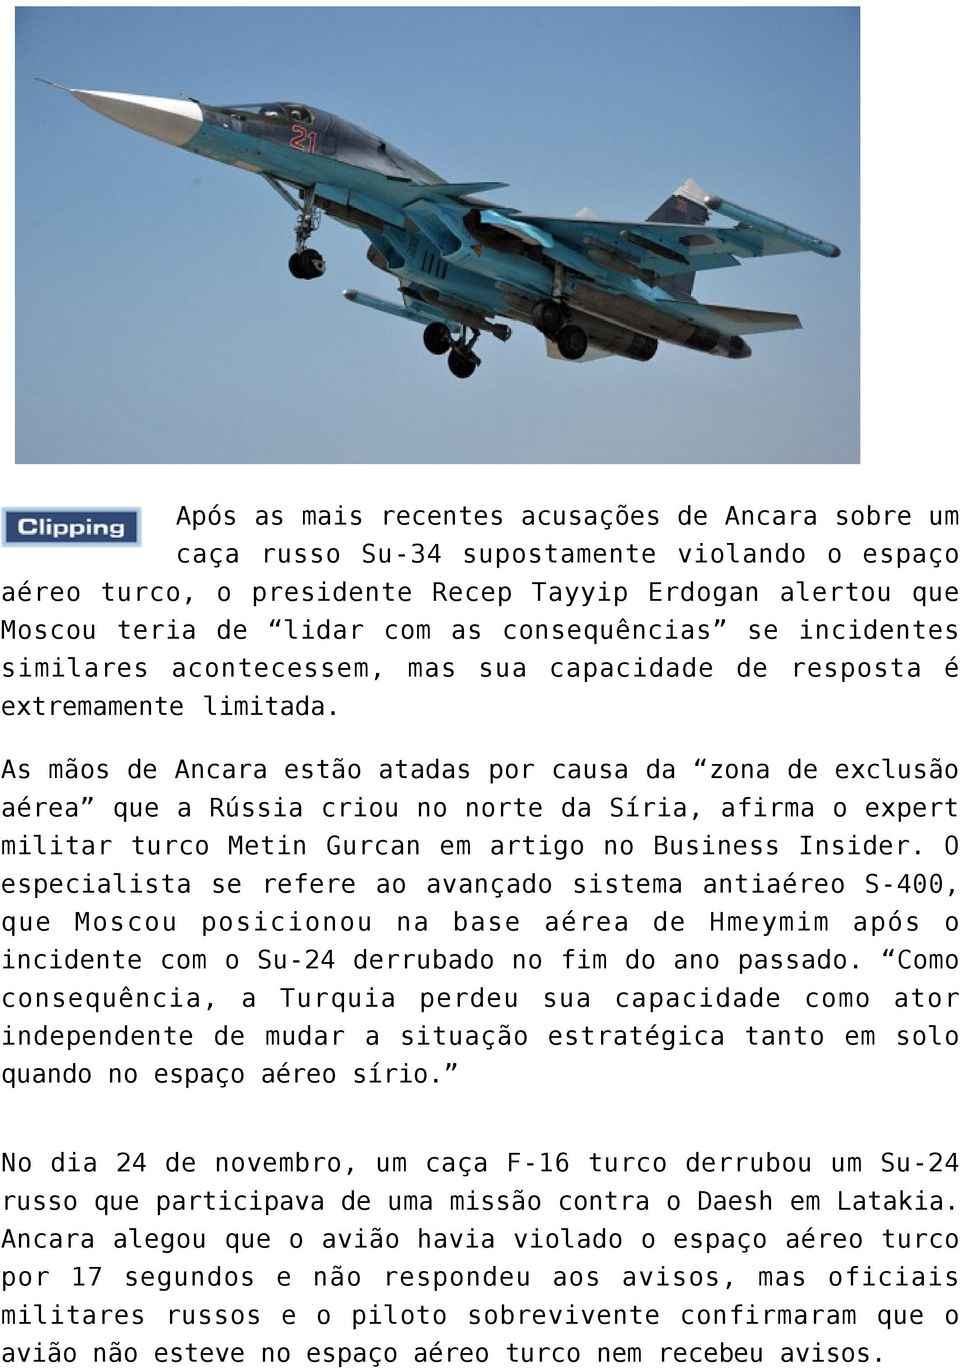 As mãos de Ancara estão atadas por causa da zona de exclusão aérea que a Rússia criou no norte da Síria, afirma o expert militar turco Metin Gurcan em artigo no Business Insider.